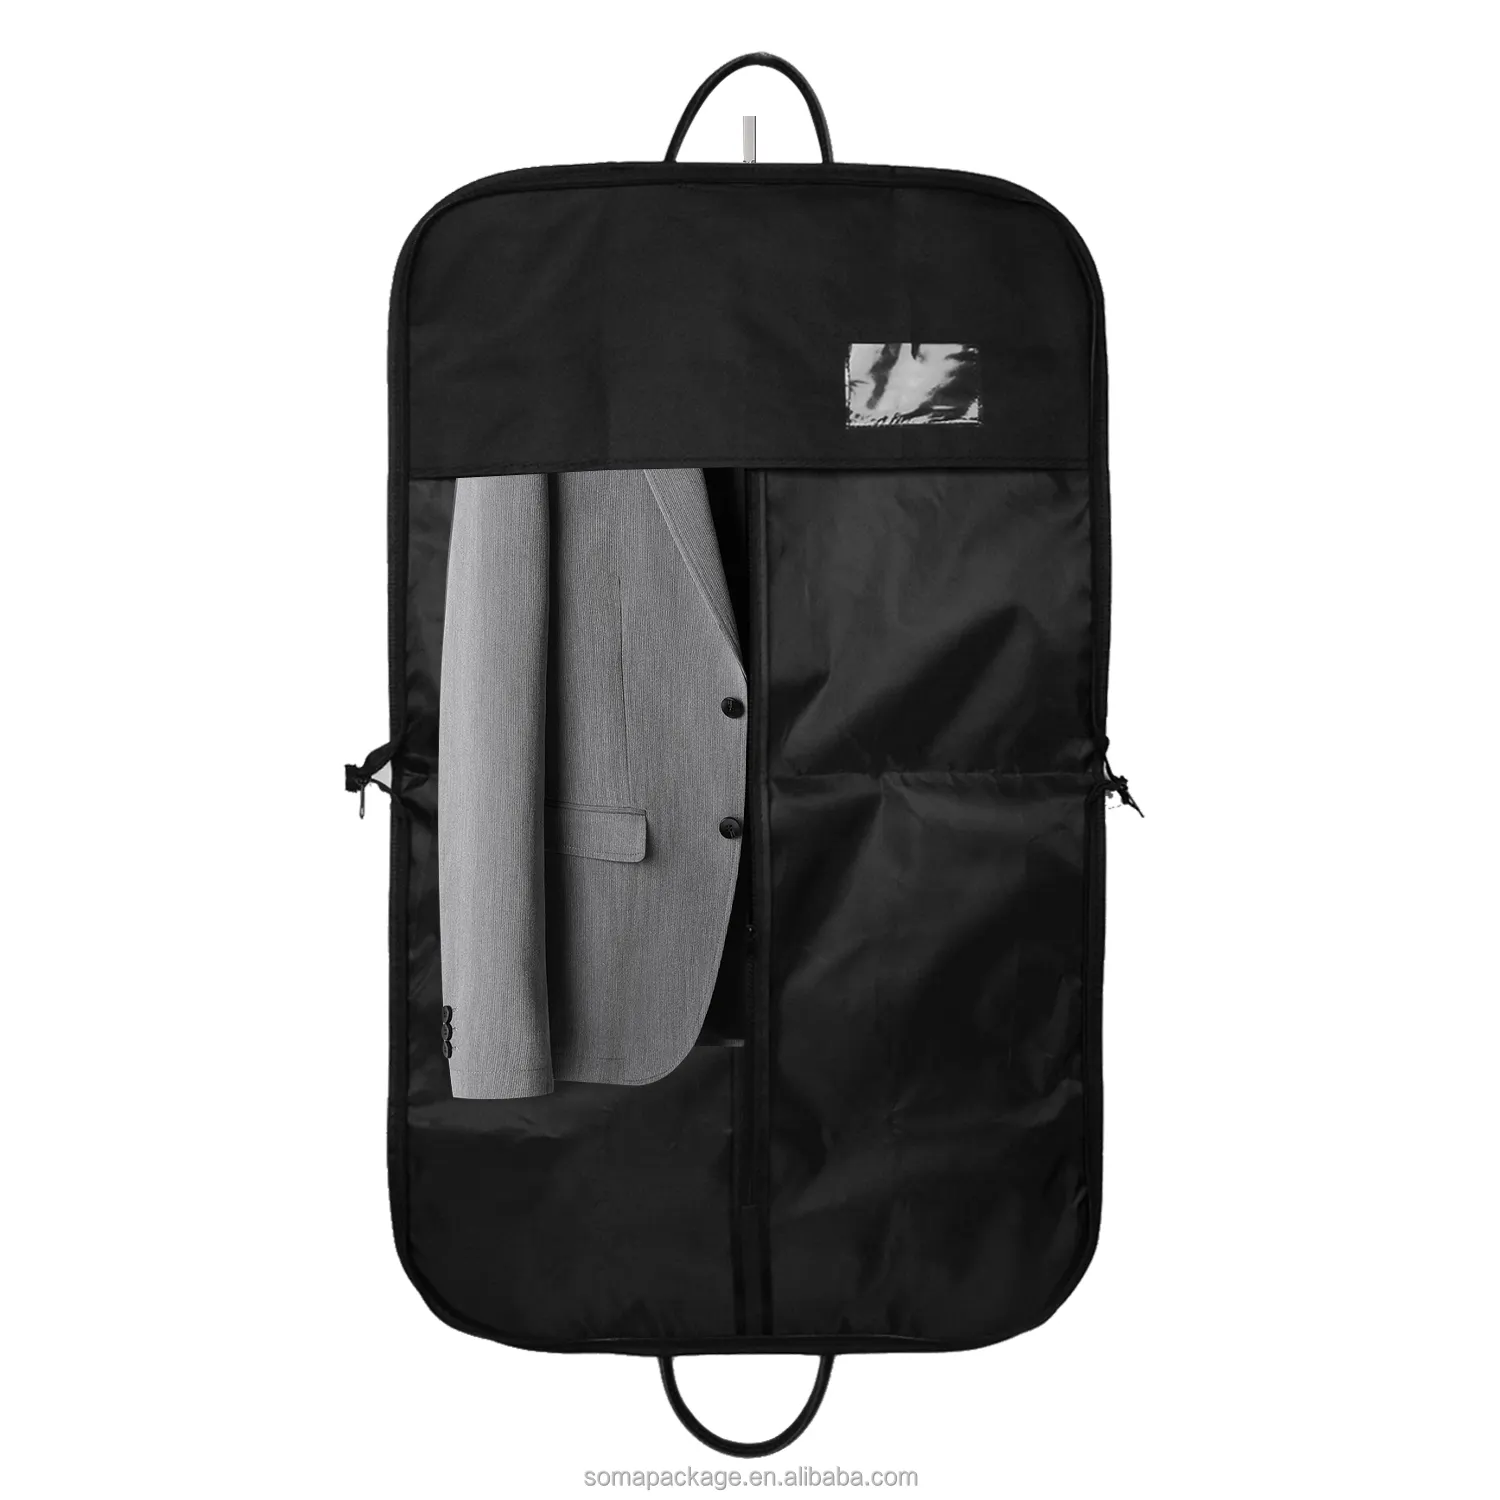 Orijinal takım seyahat gelinlik açık ön konfeksiyon çanta özel Logo baskılı